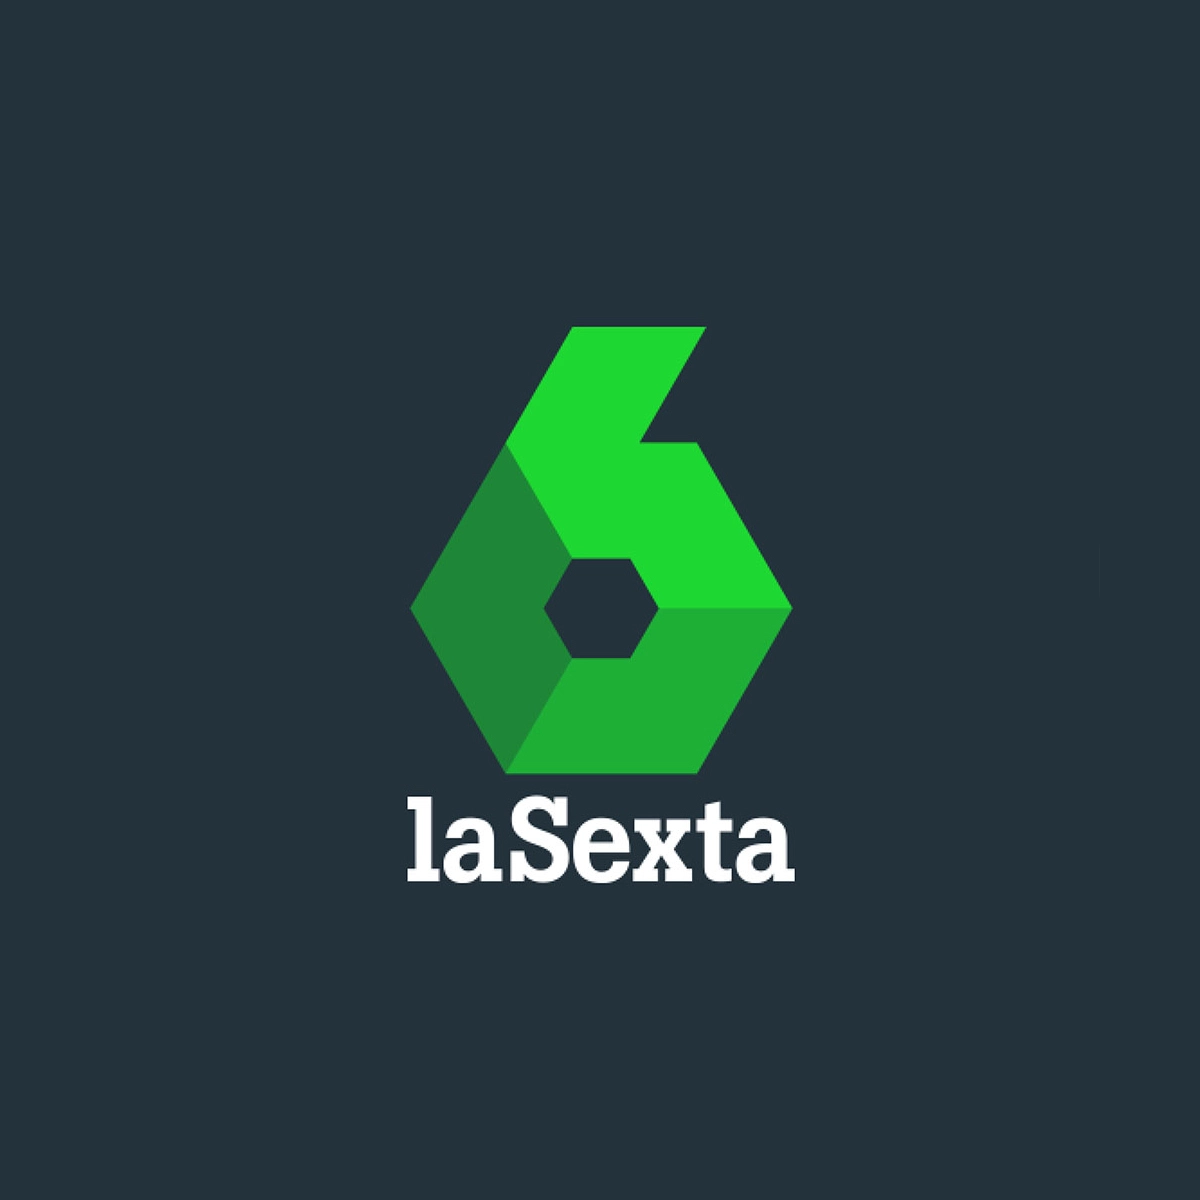 Logotipo del canal de televisión la Sexta